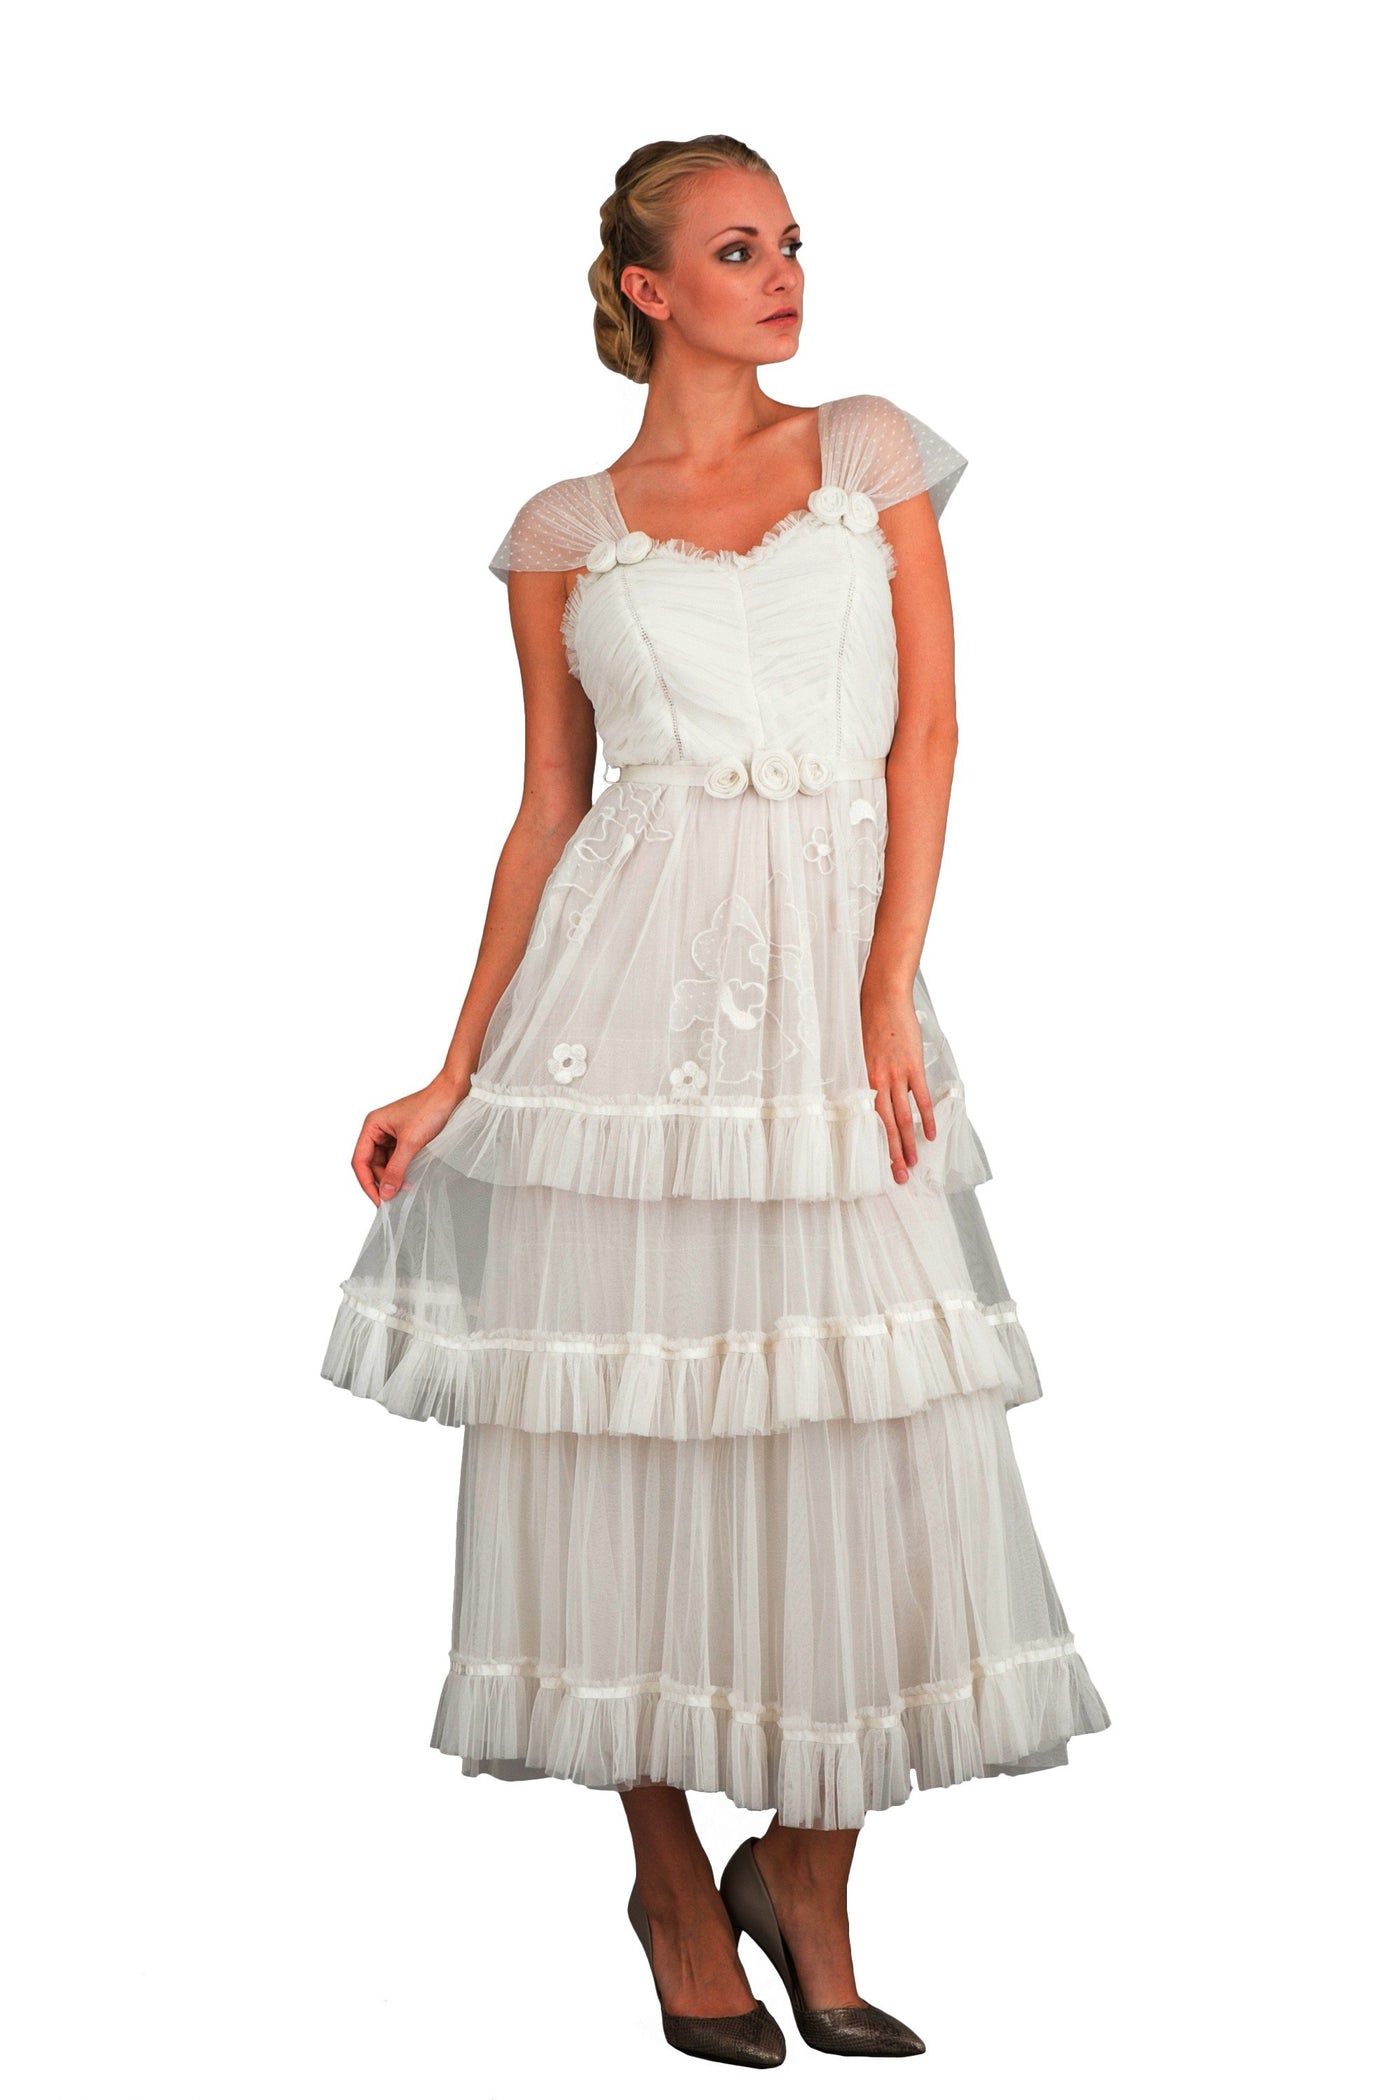 Nataya 40244 Vintage Inspired Dress in Ivory